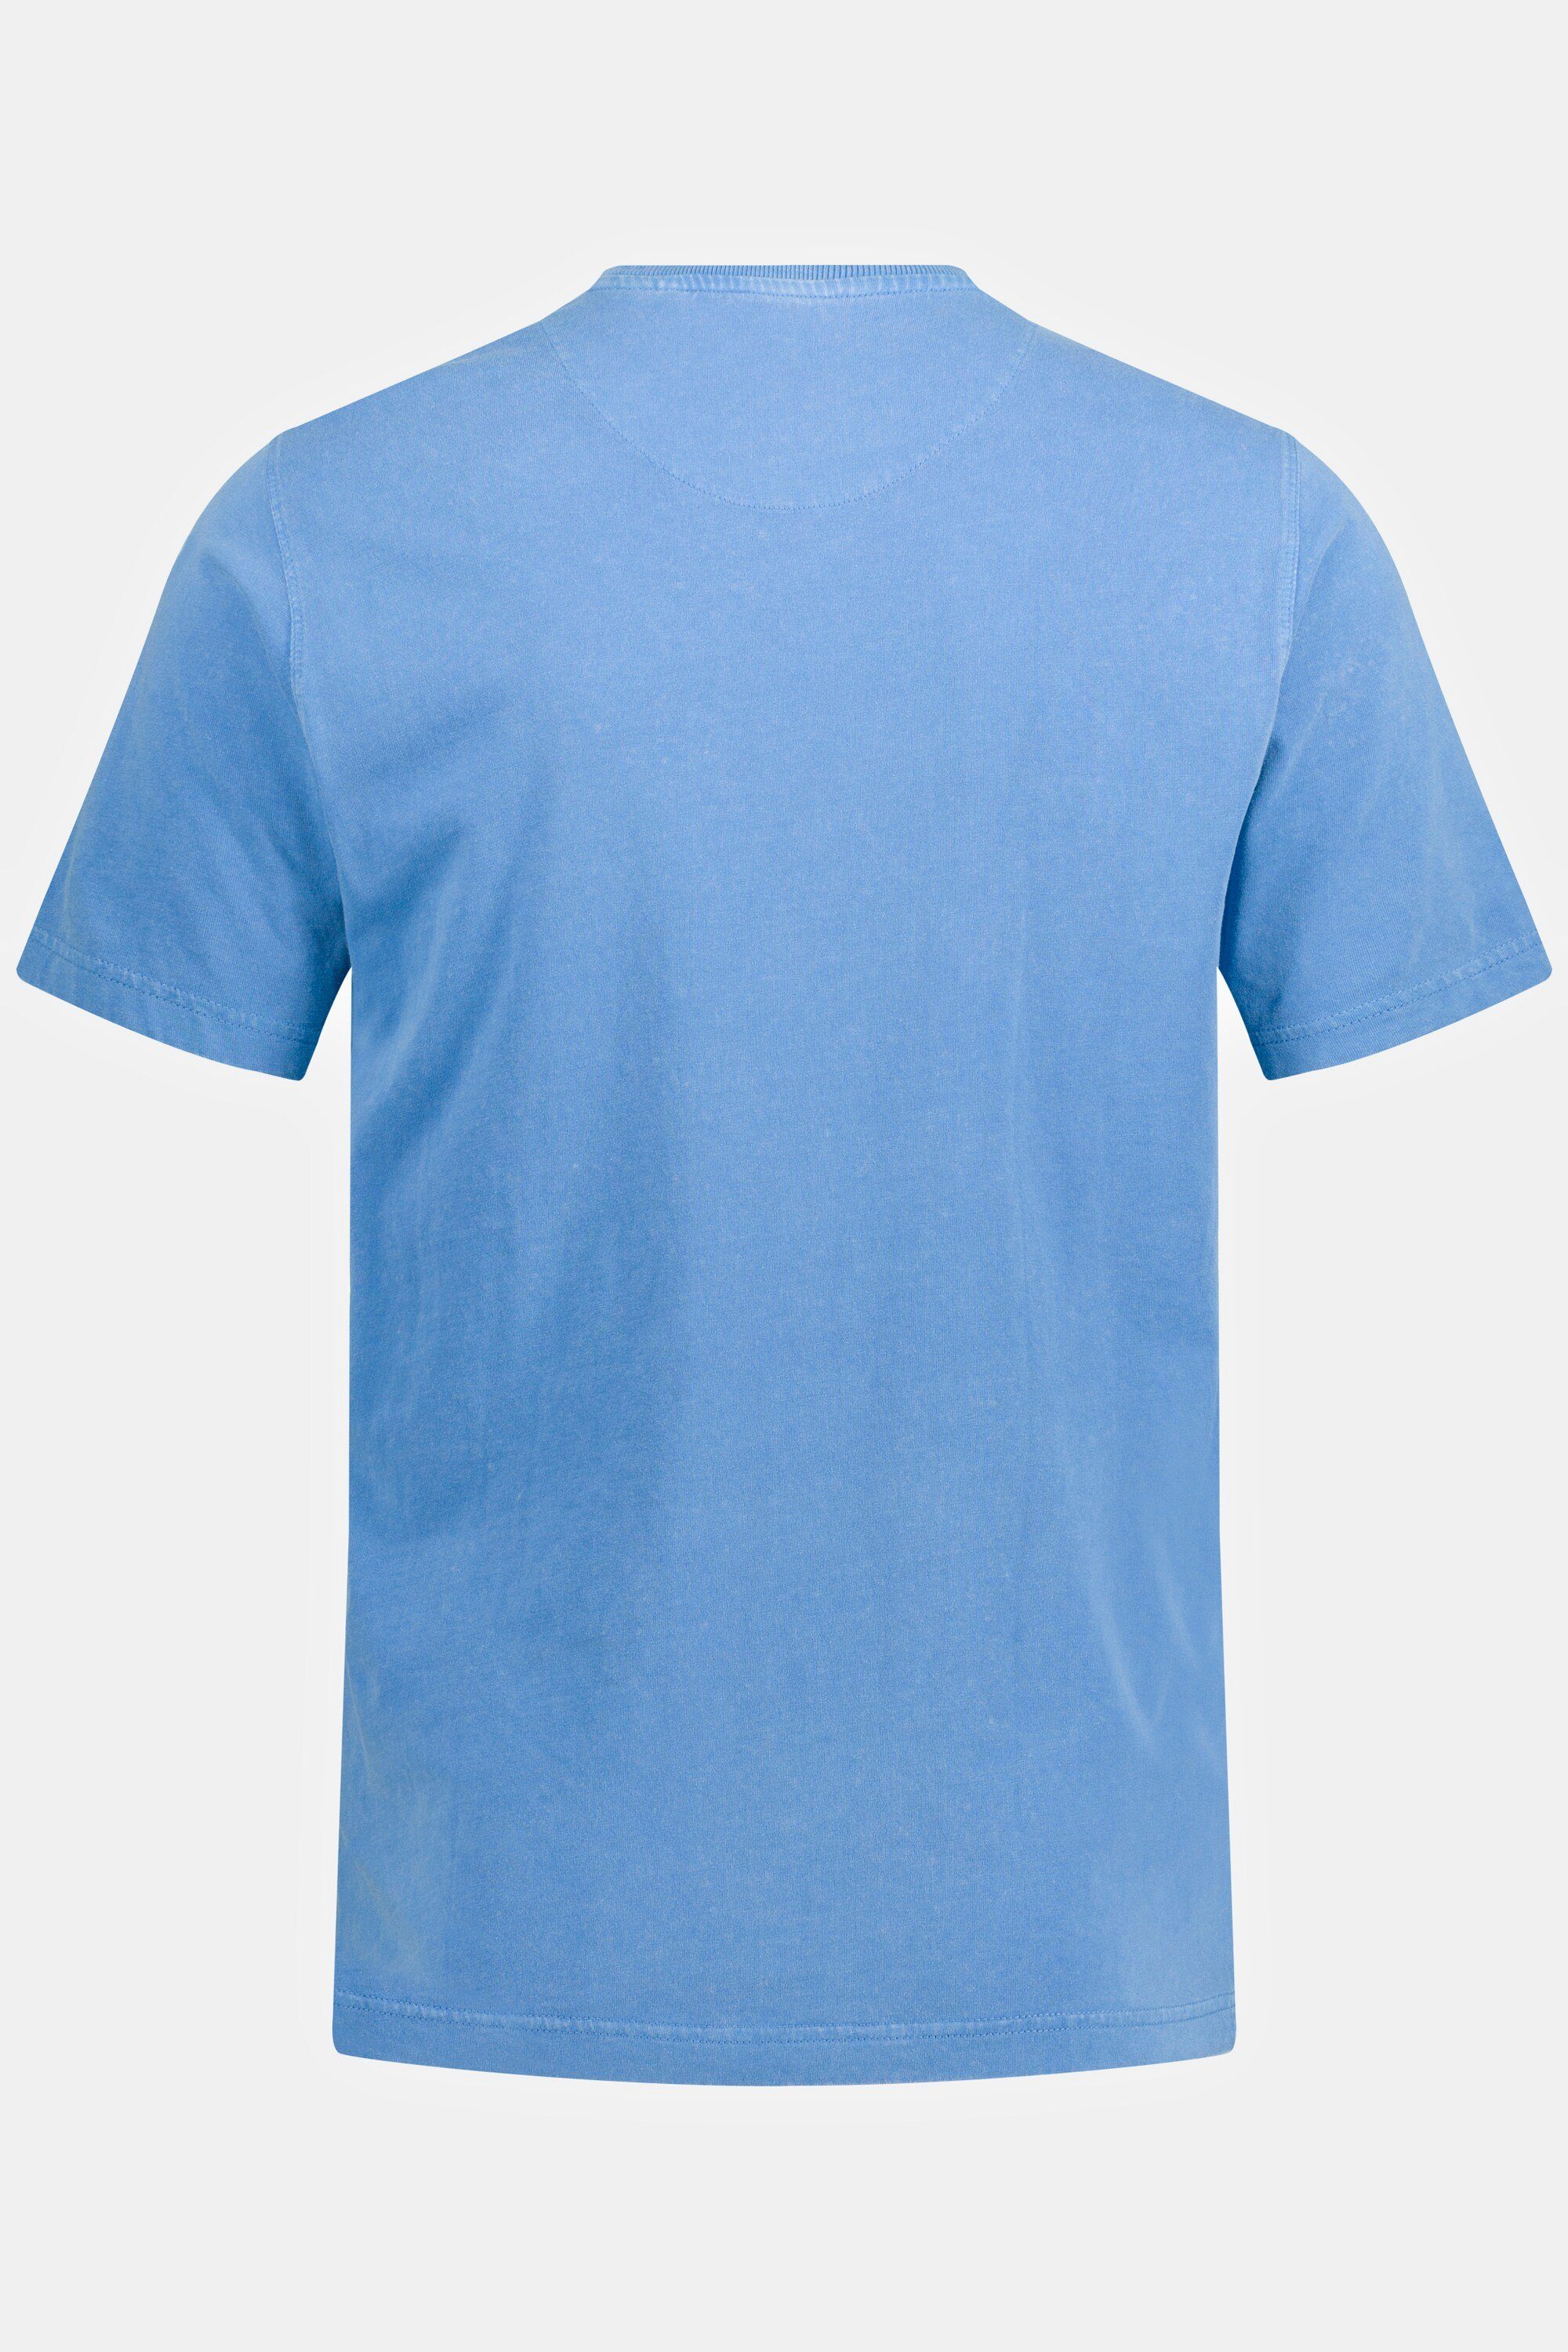 JP1880 T-Shirt Rundhals blau T-Shirt Brusttasche Halbarm